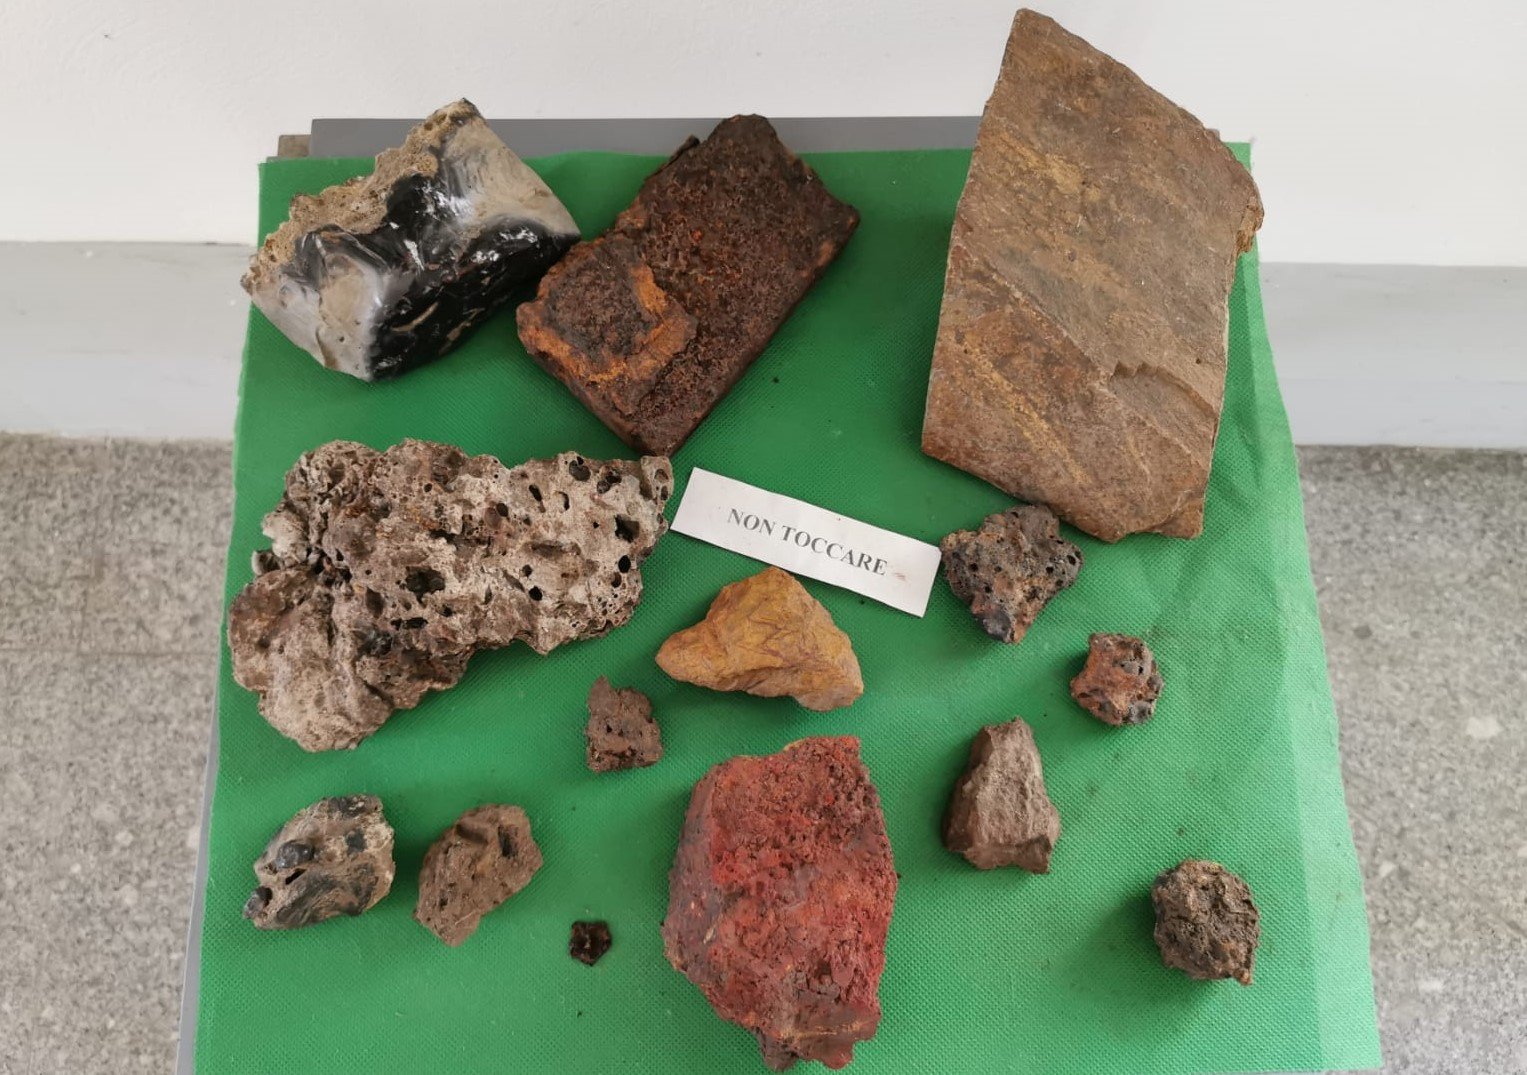 minerali estratti nelle zone di Stilo in Calabria